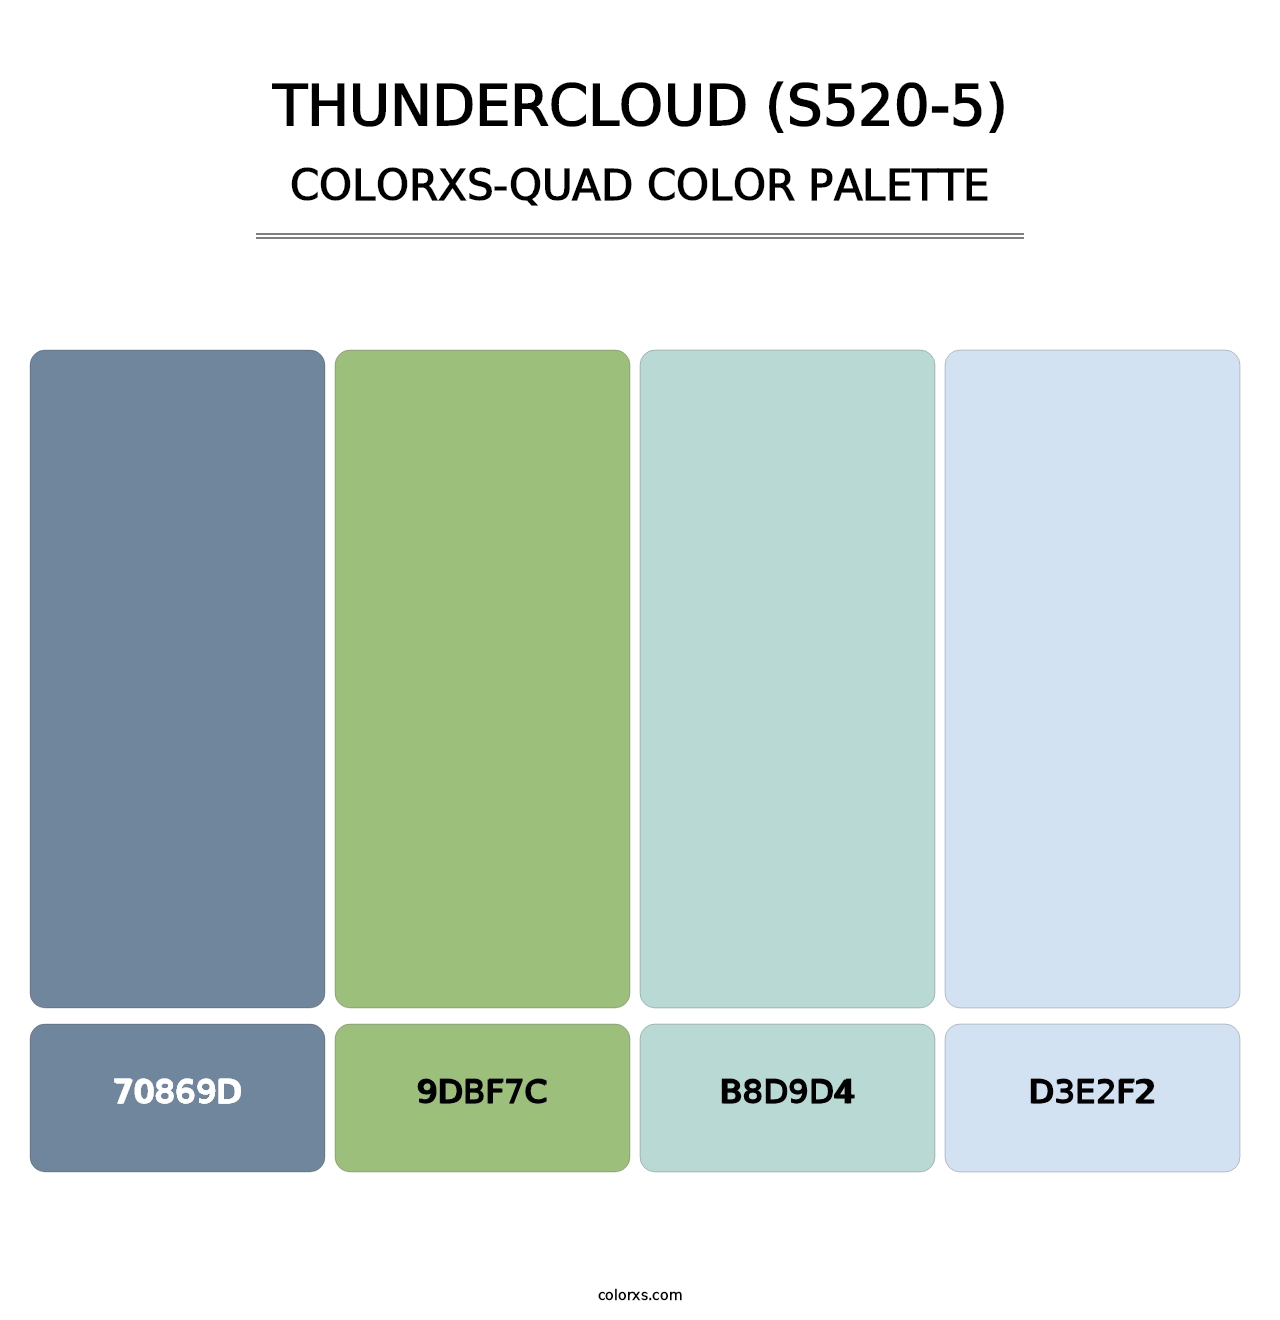 Thundercloud (S520-5) - Colorxs Quad Palette